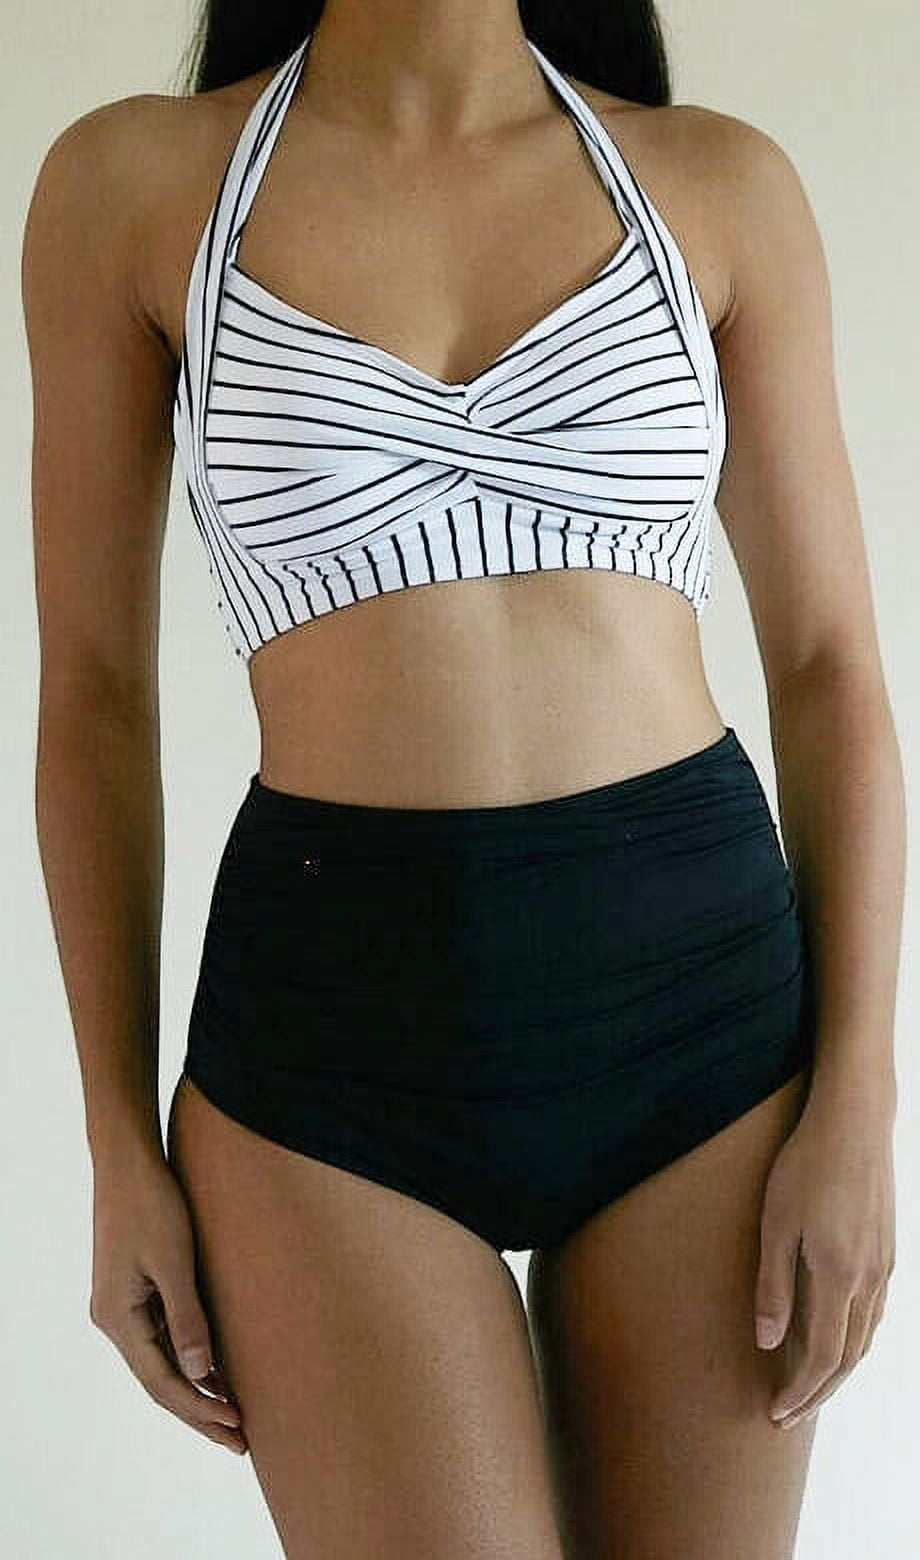 Women's Smart and Sexy SA625 Longline Underwire Bikini Swim Top (Fuschia  Sizzle 38DDD)